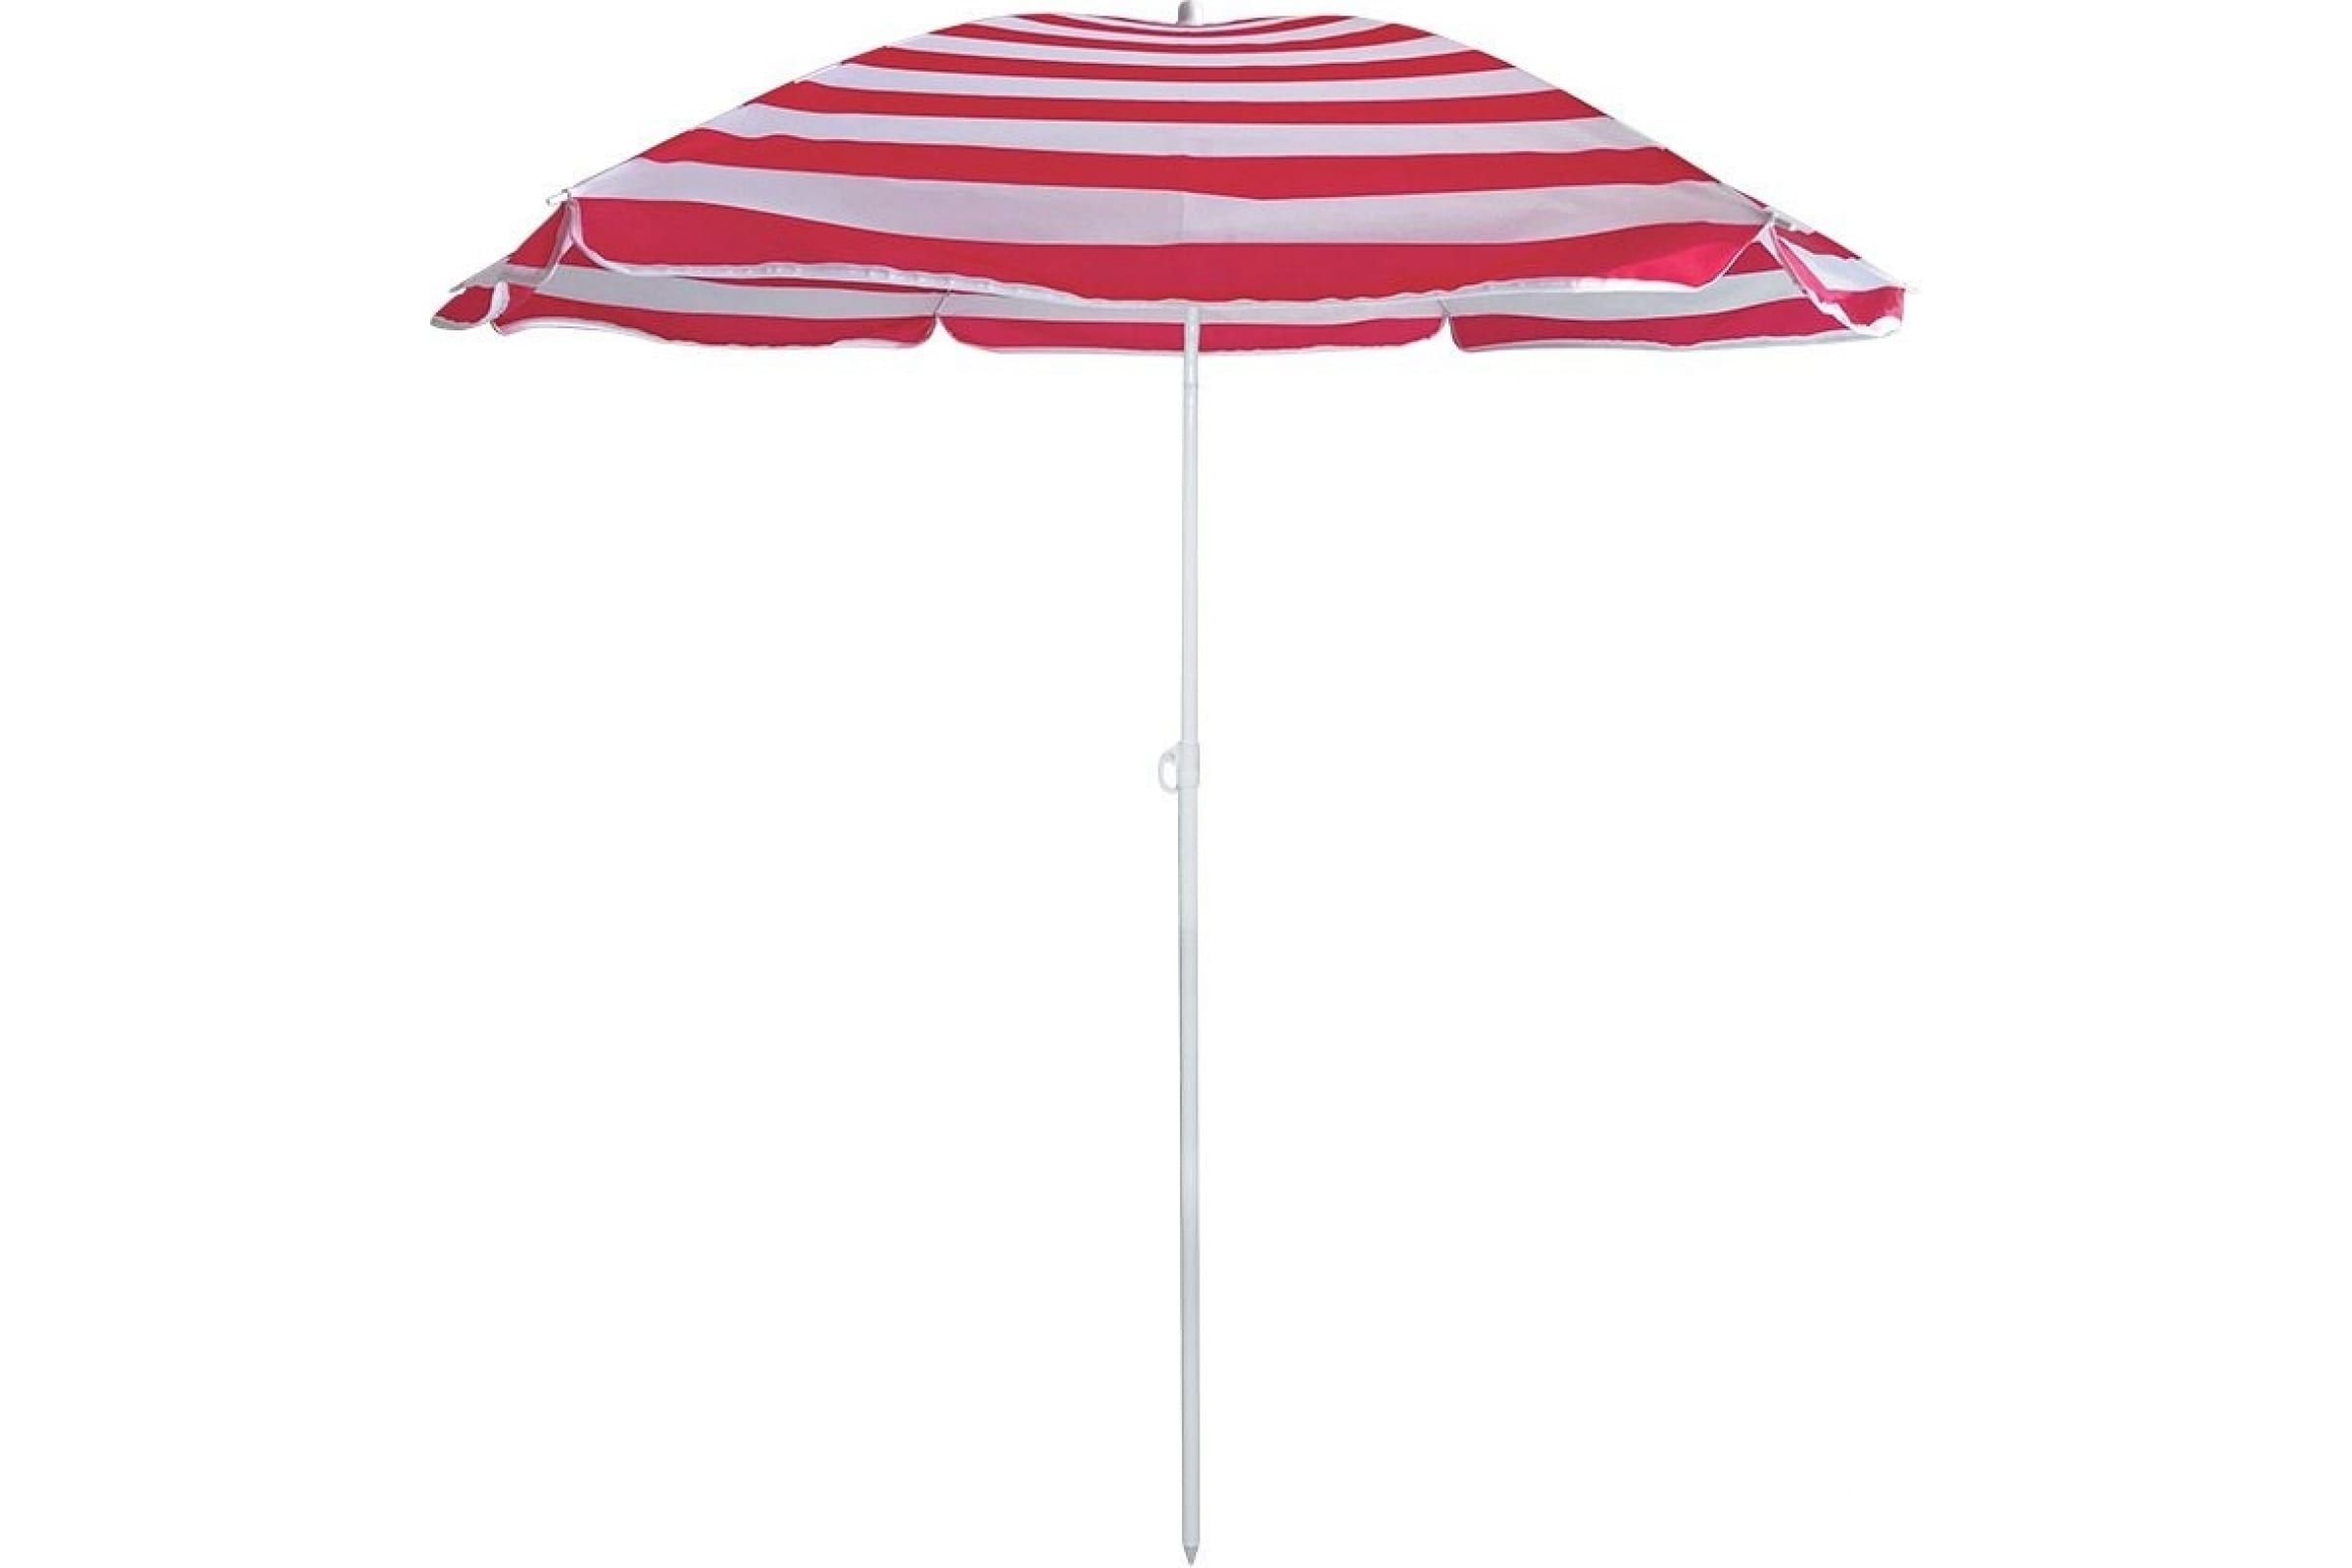 Пляжный зонт EcosBU-68 диаметр 175 см, складная штанга 205 см 999368